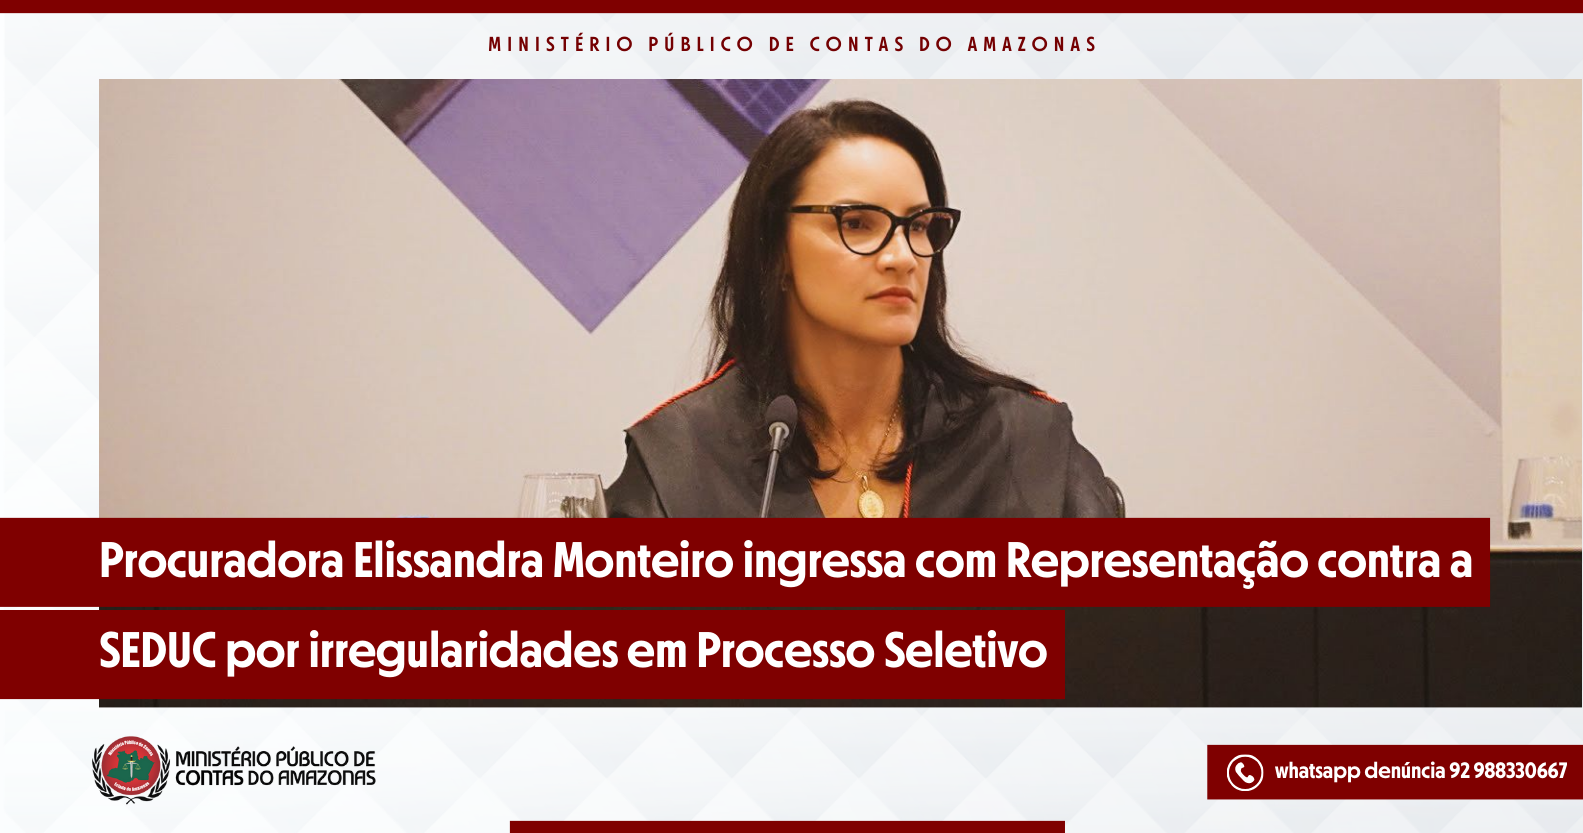 Procuradora Elissandra Monteiro ingressa com Representação contra a SEDUC por irregularidades em Processo Seletivo